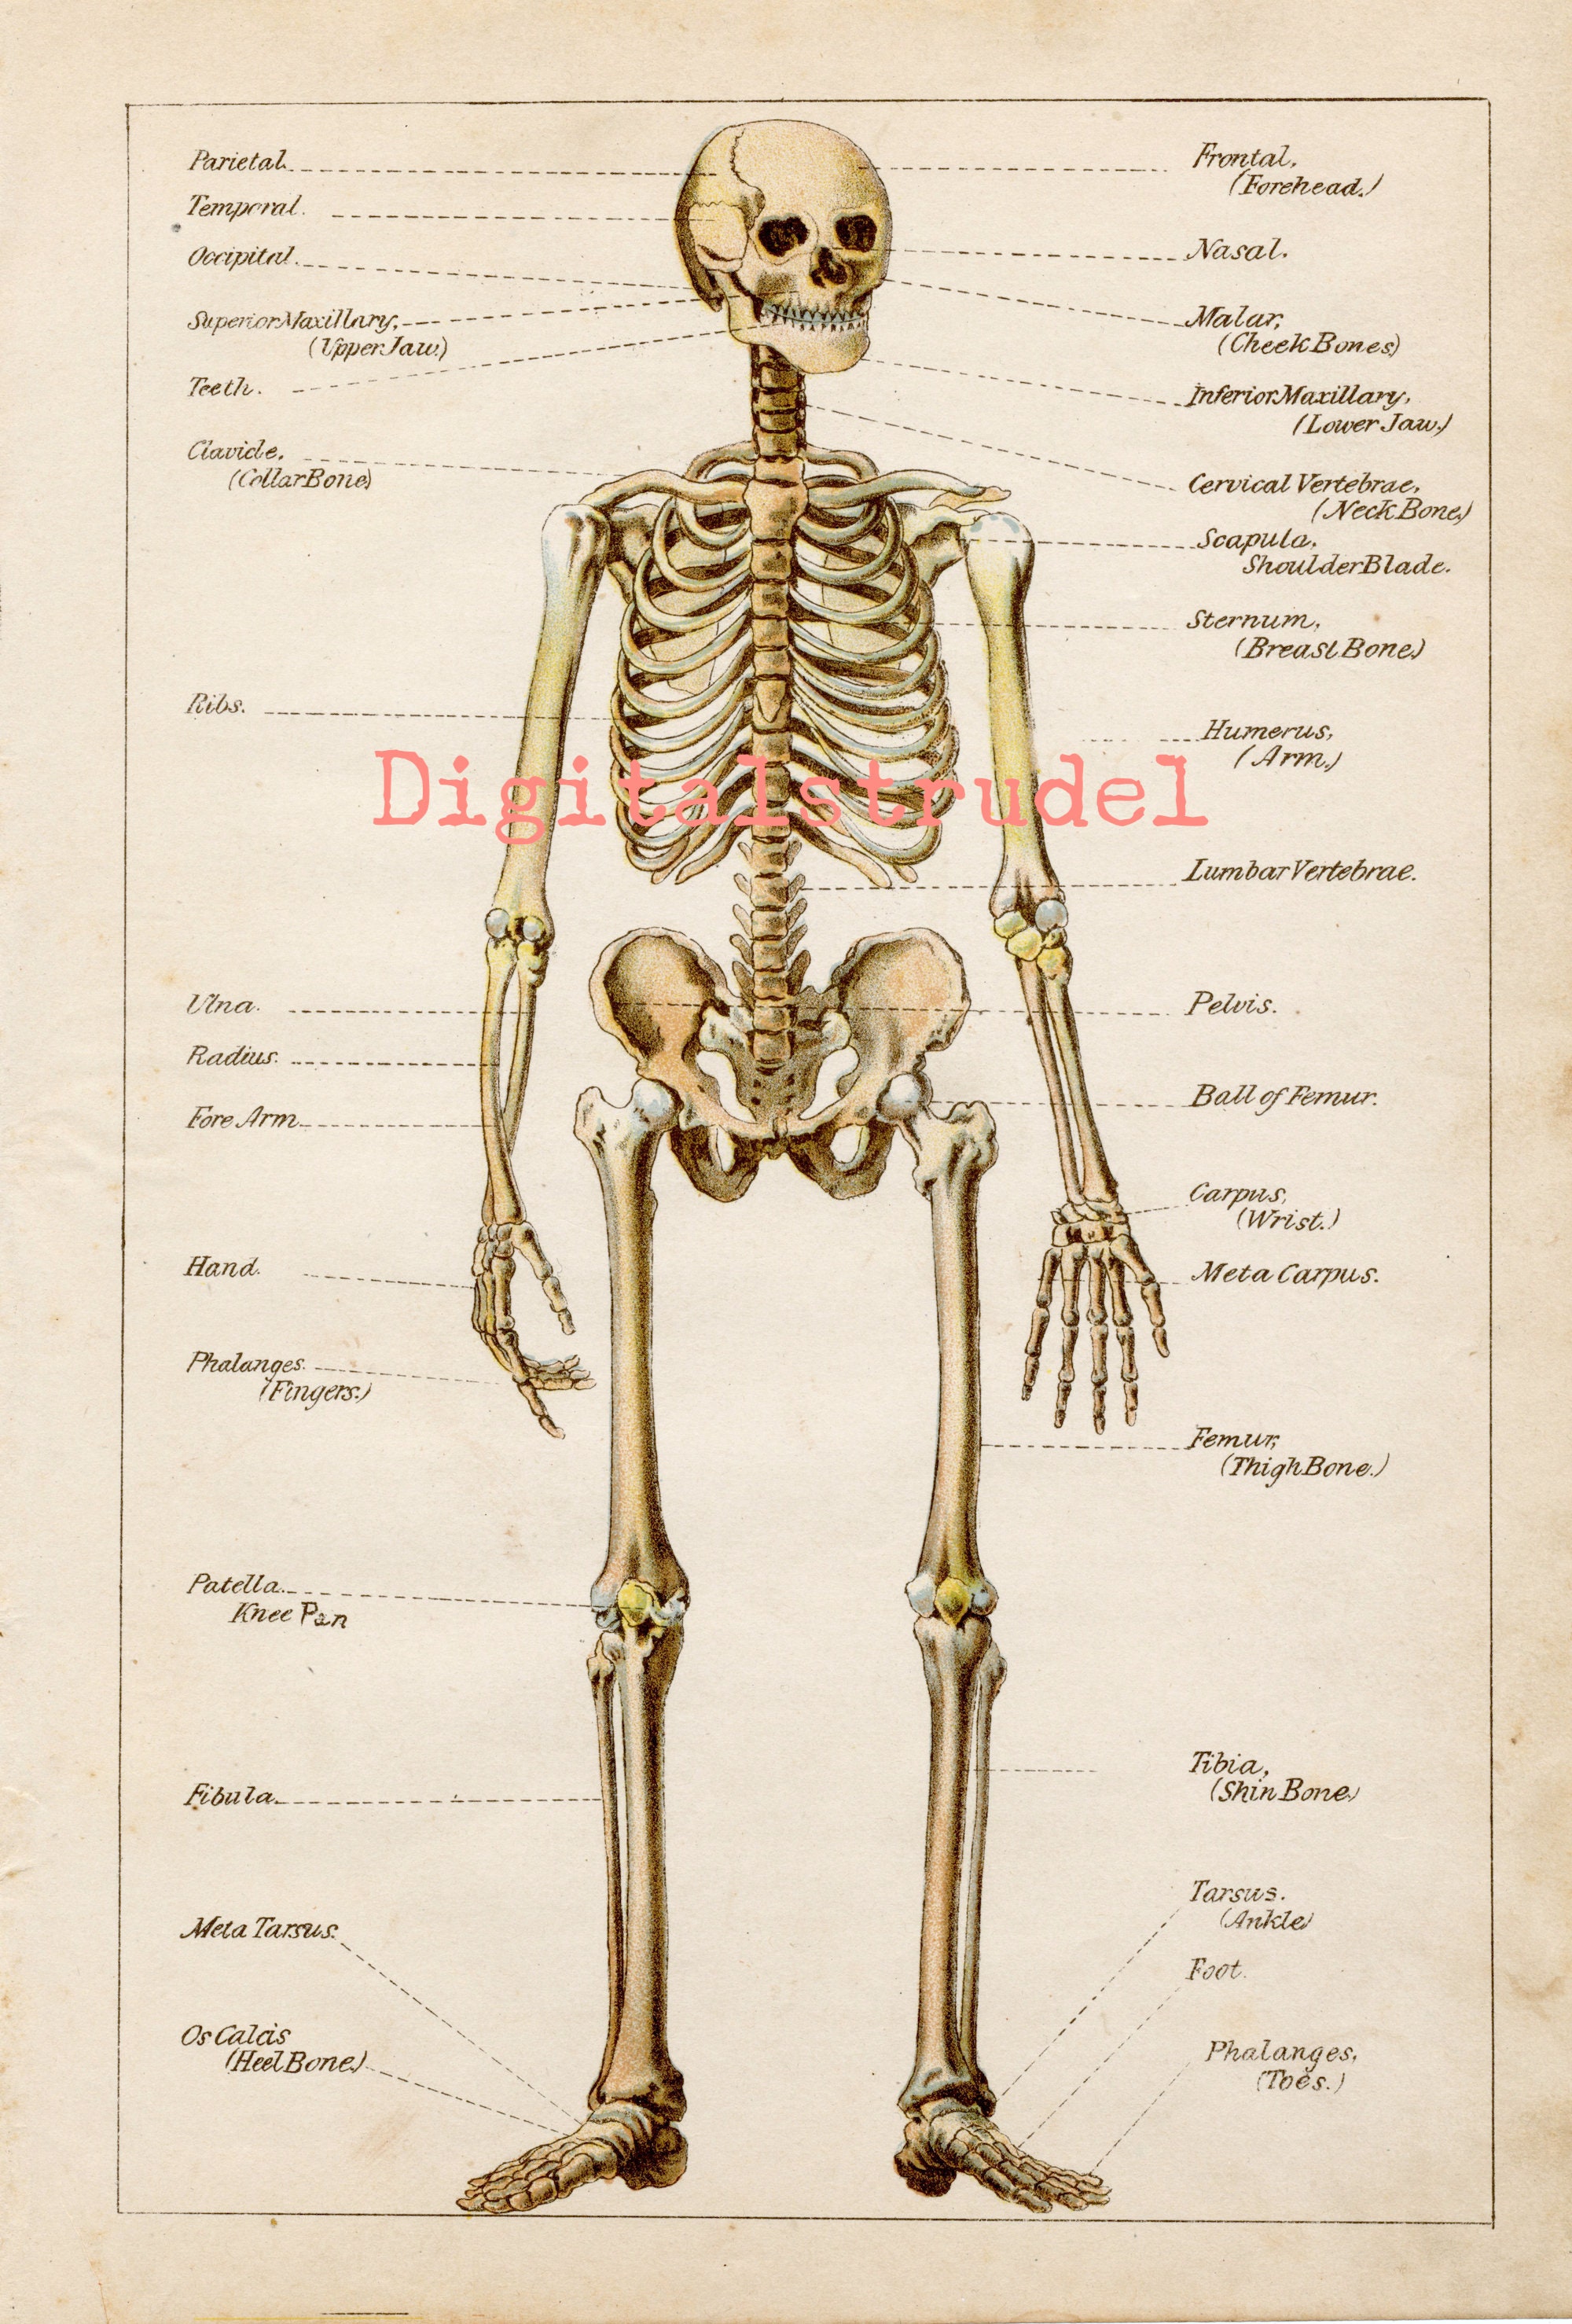 Skelettsystem: Anatomie, Knochen und Funktion